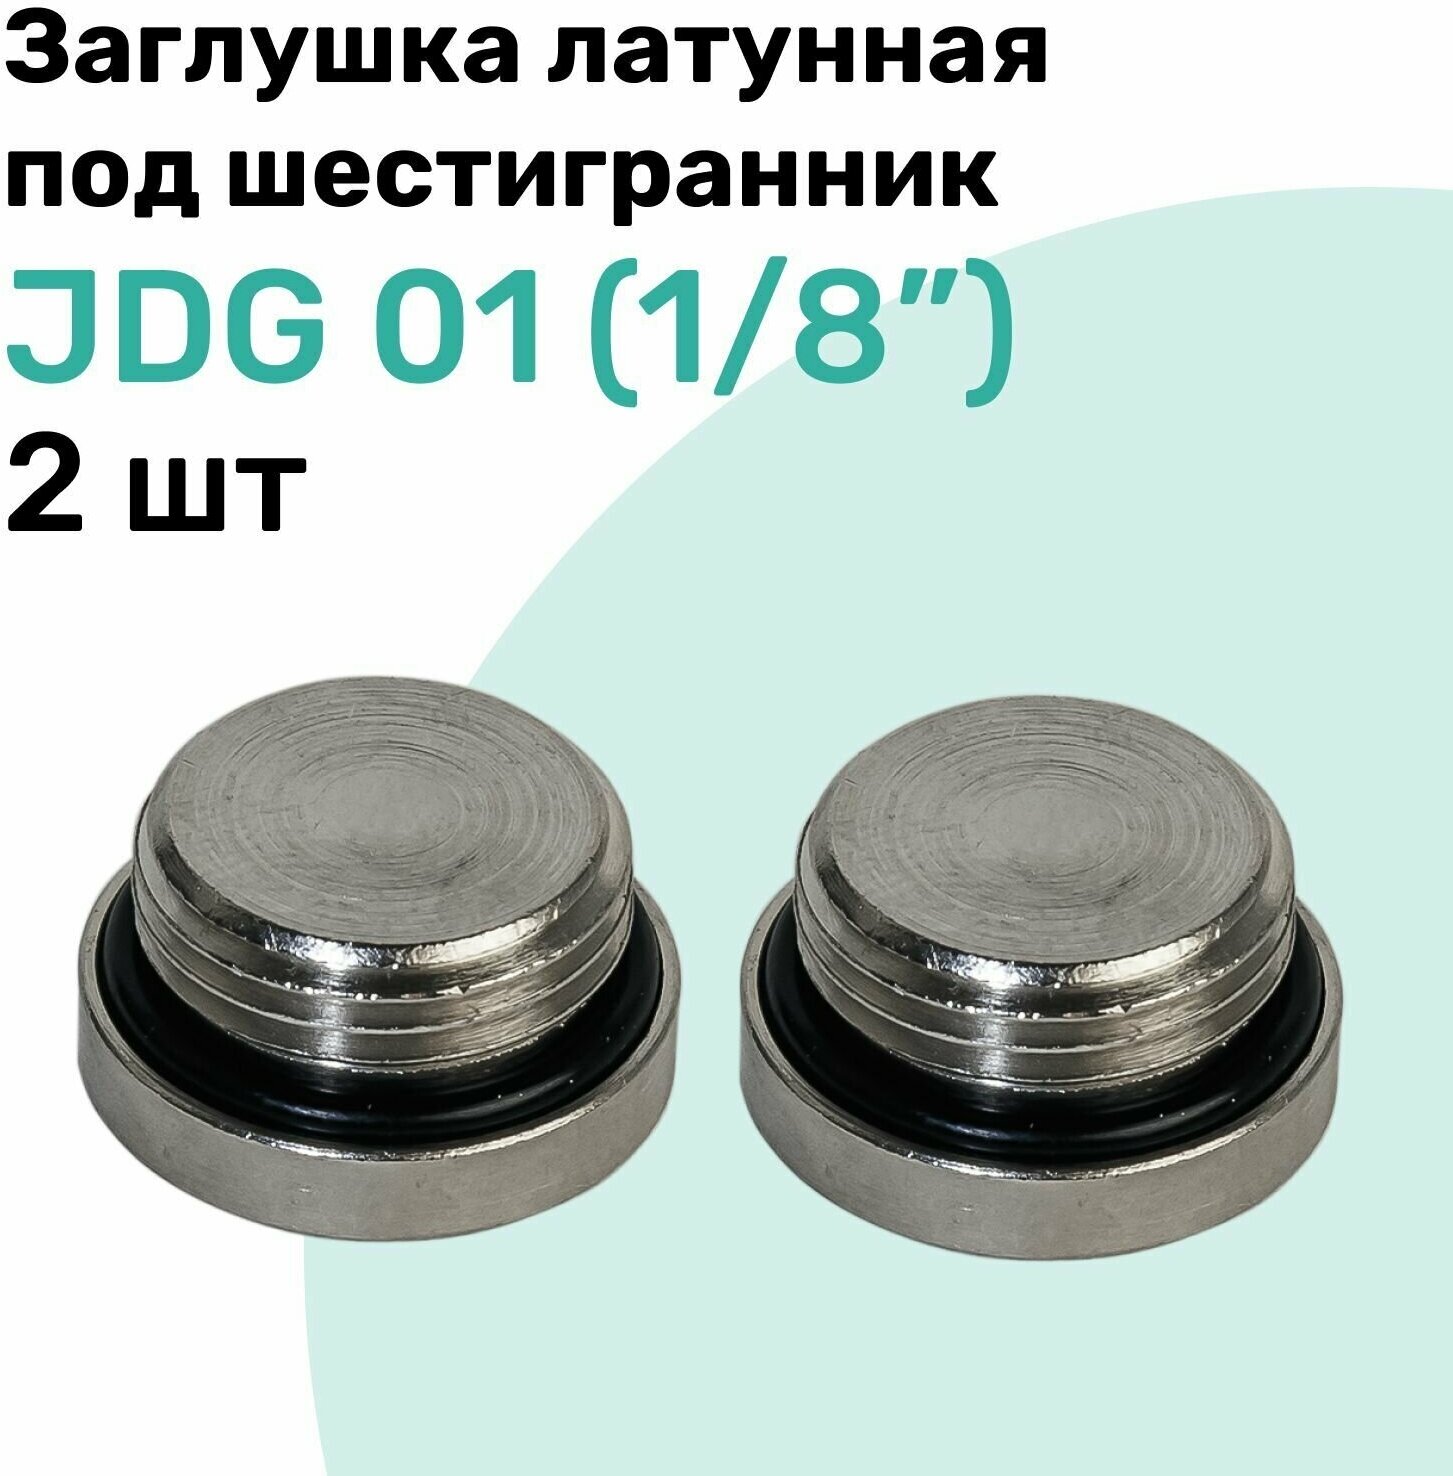 Заглушка латунная под шестигранник JDG 01 (R1/8"), с уплотнительным кольцом из NBR, Пневмозаглушка NBPT, Набор 2шт